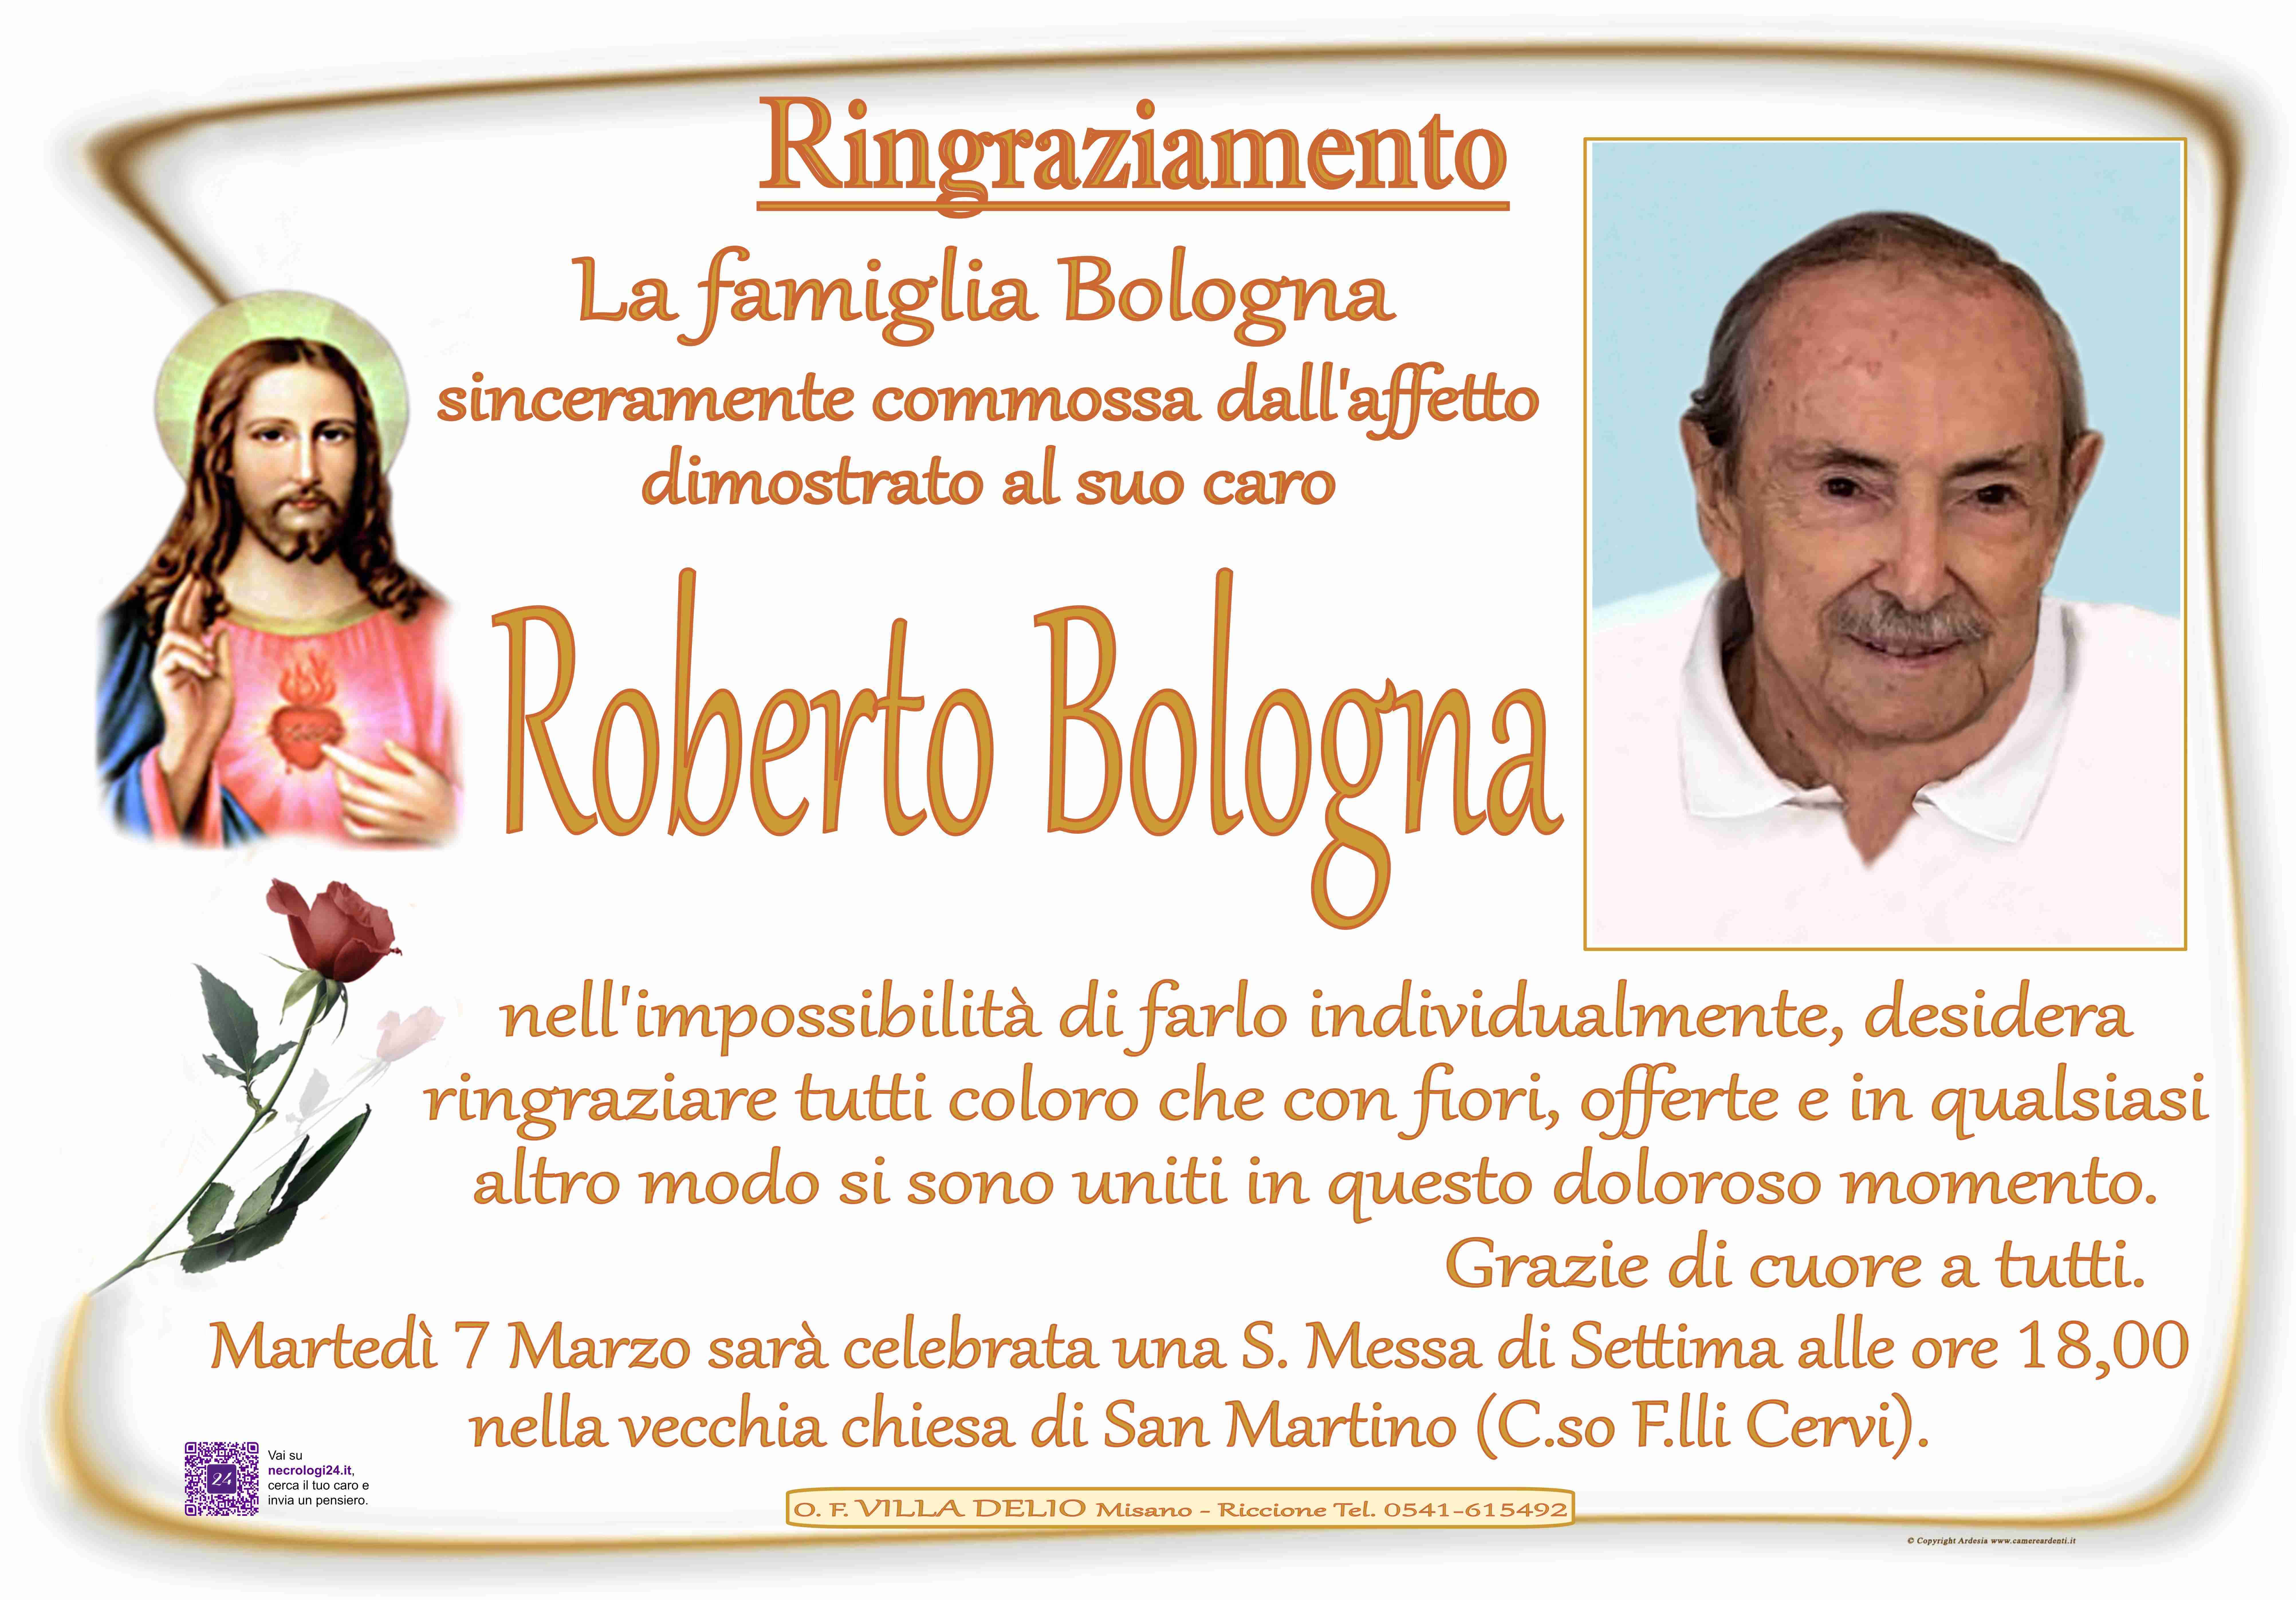 Roberto Bologna